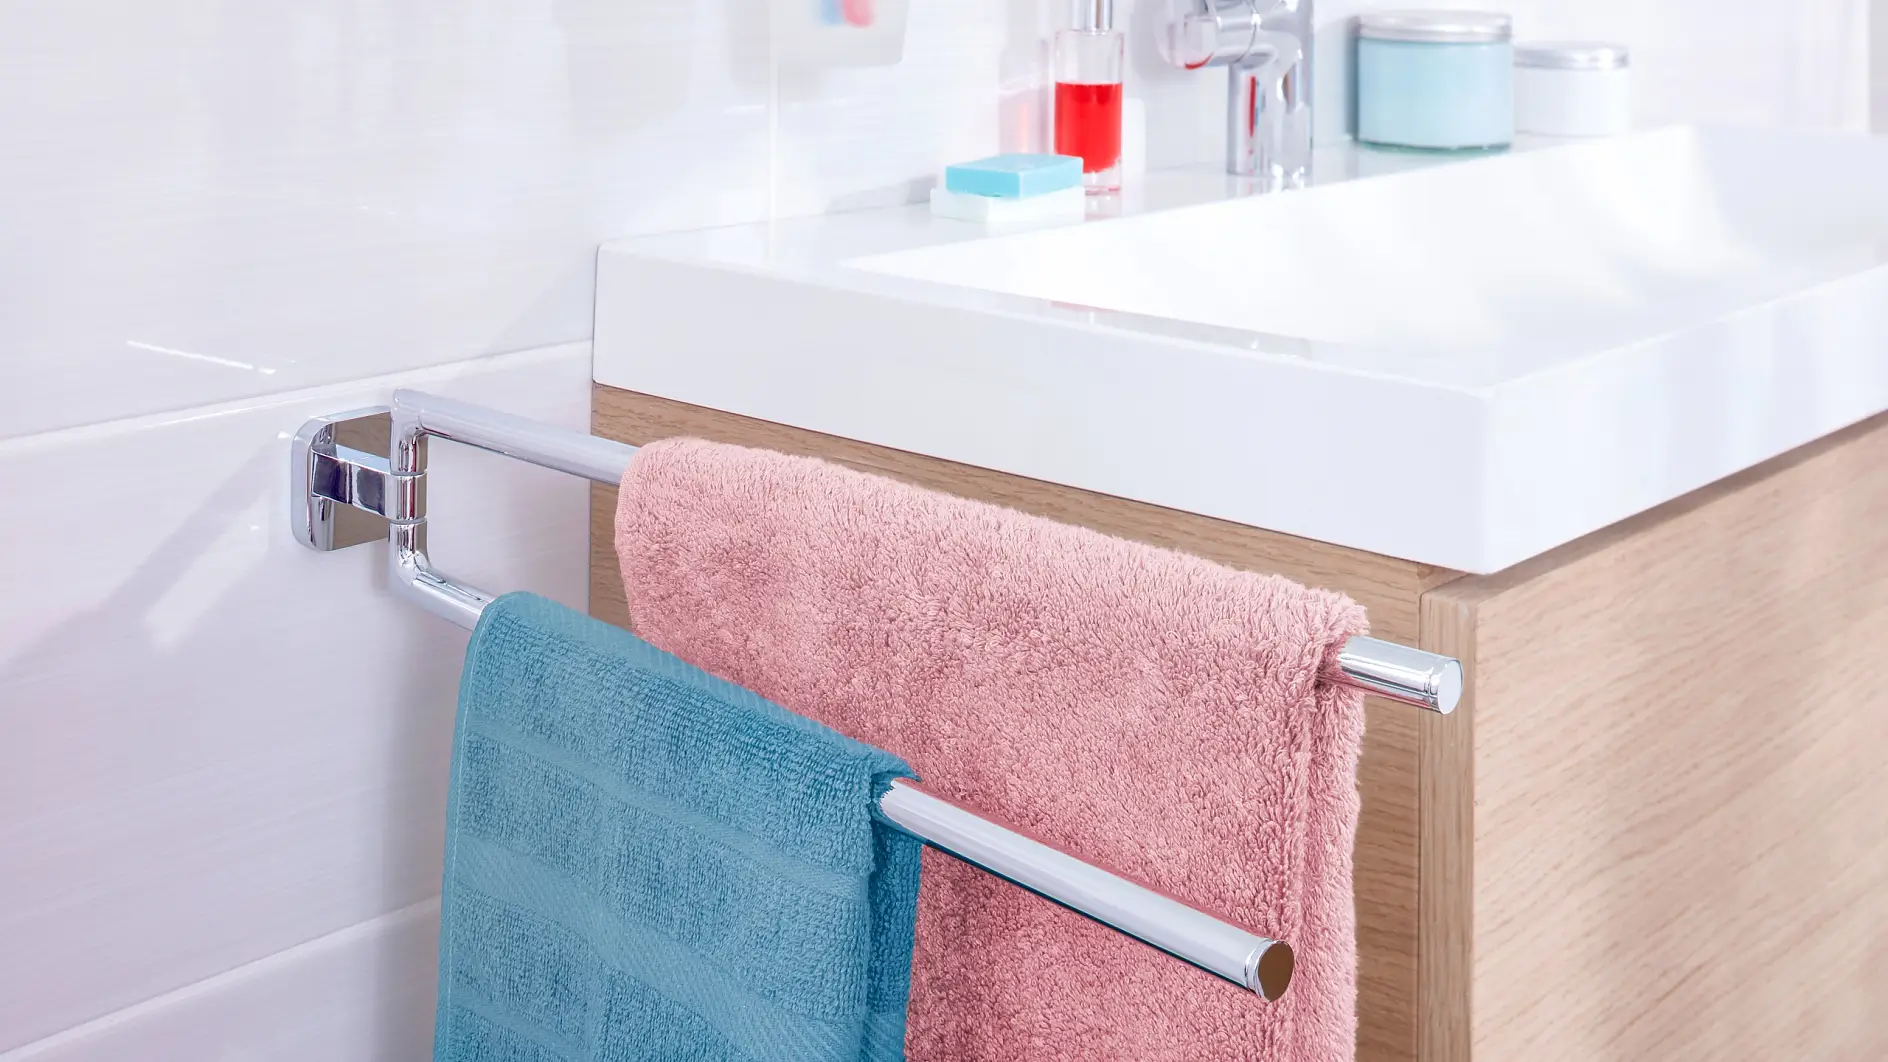 可将您的毛巾放置在您触手可及的地方，并提供毛巾使用后晾干的空间。